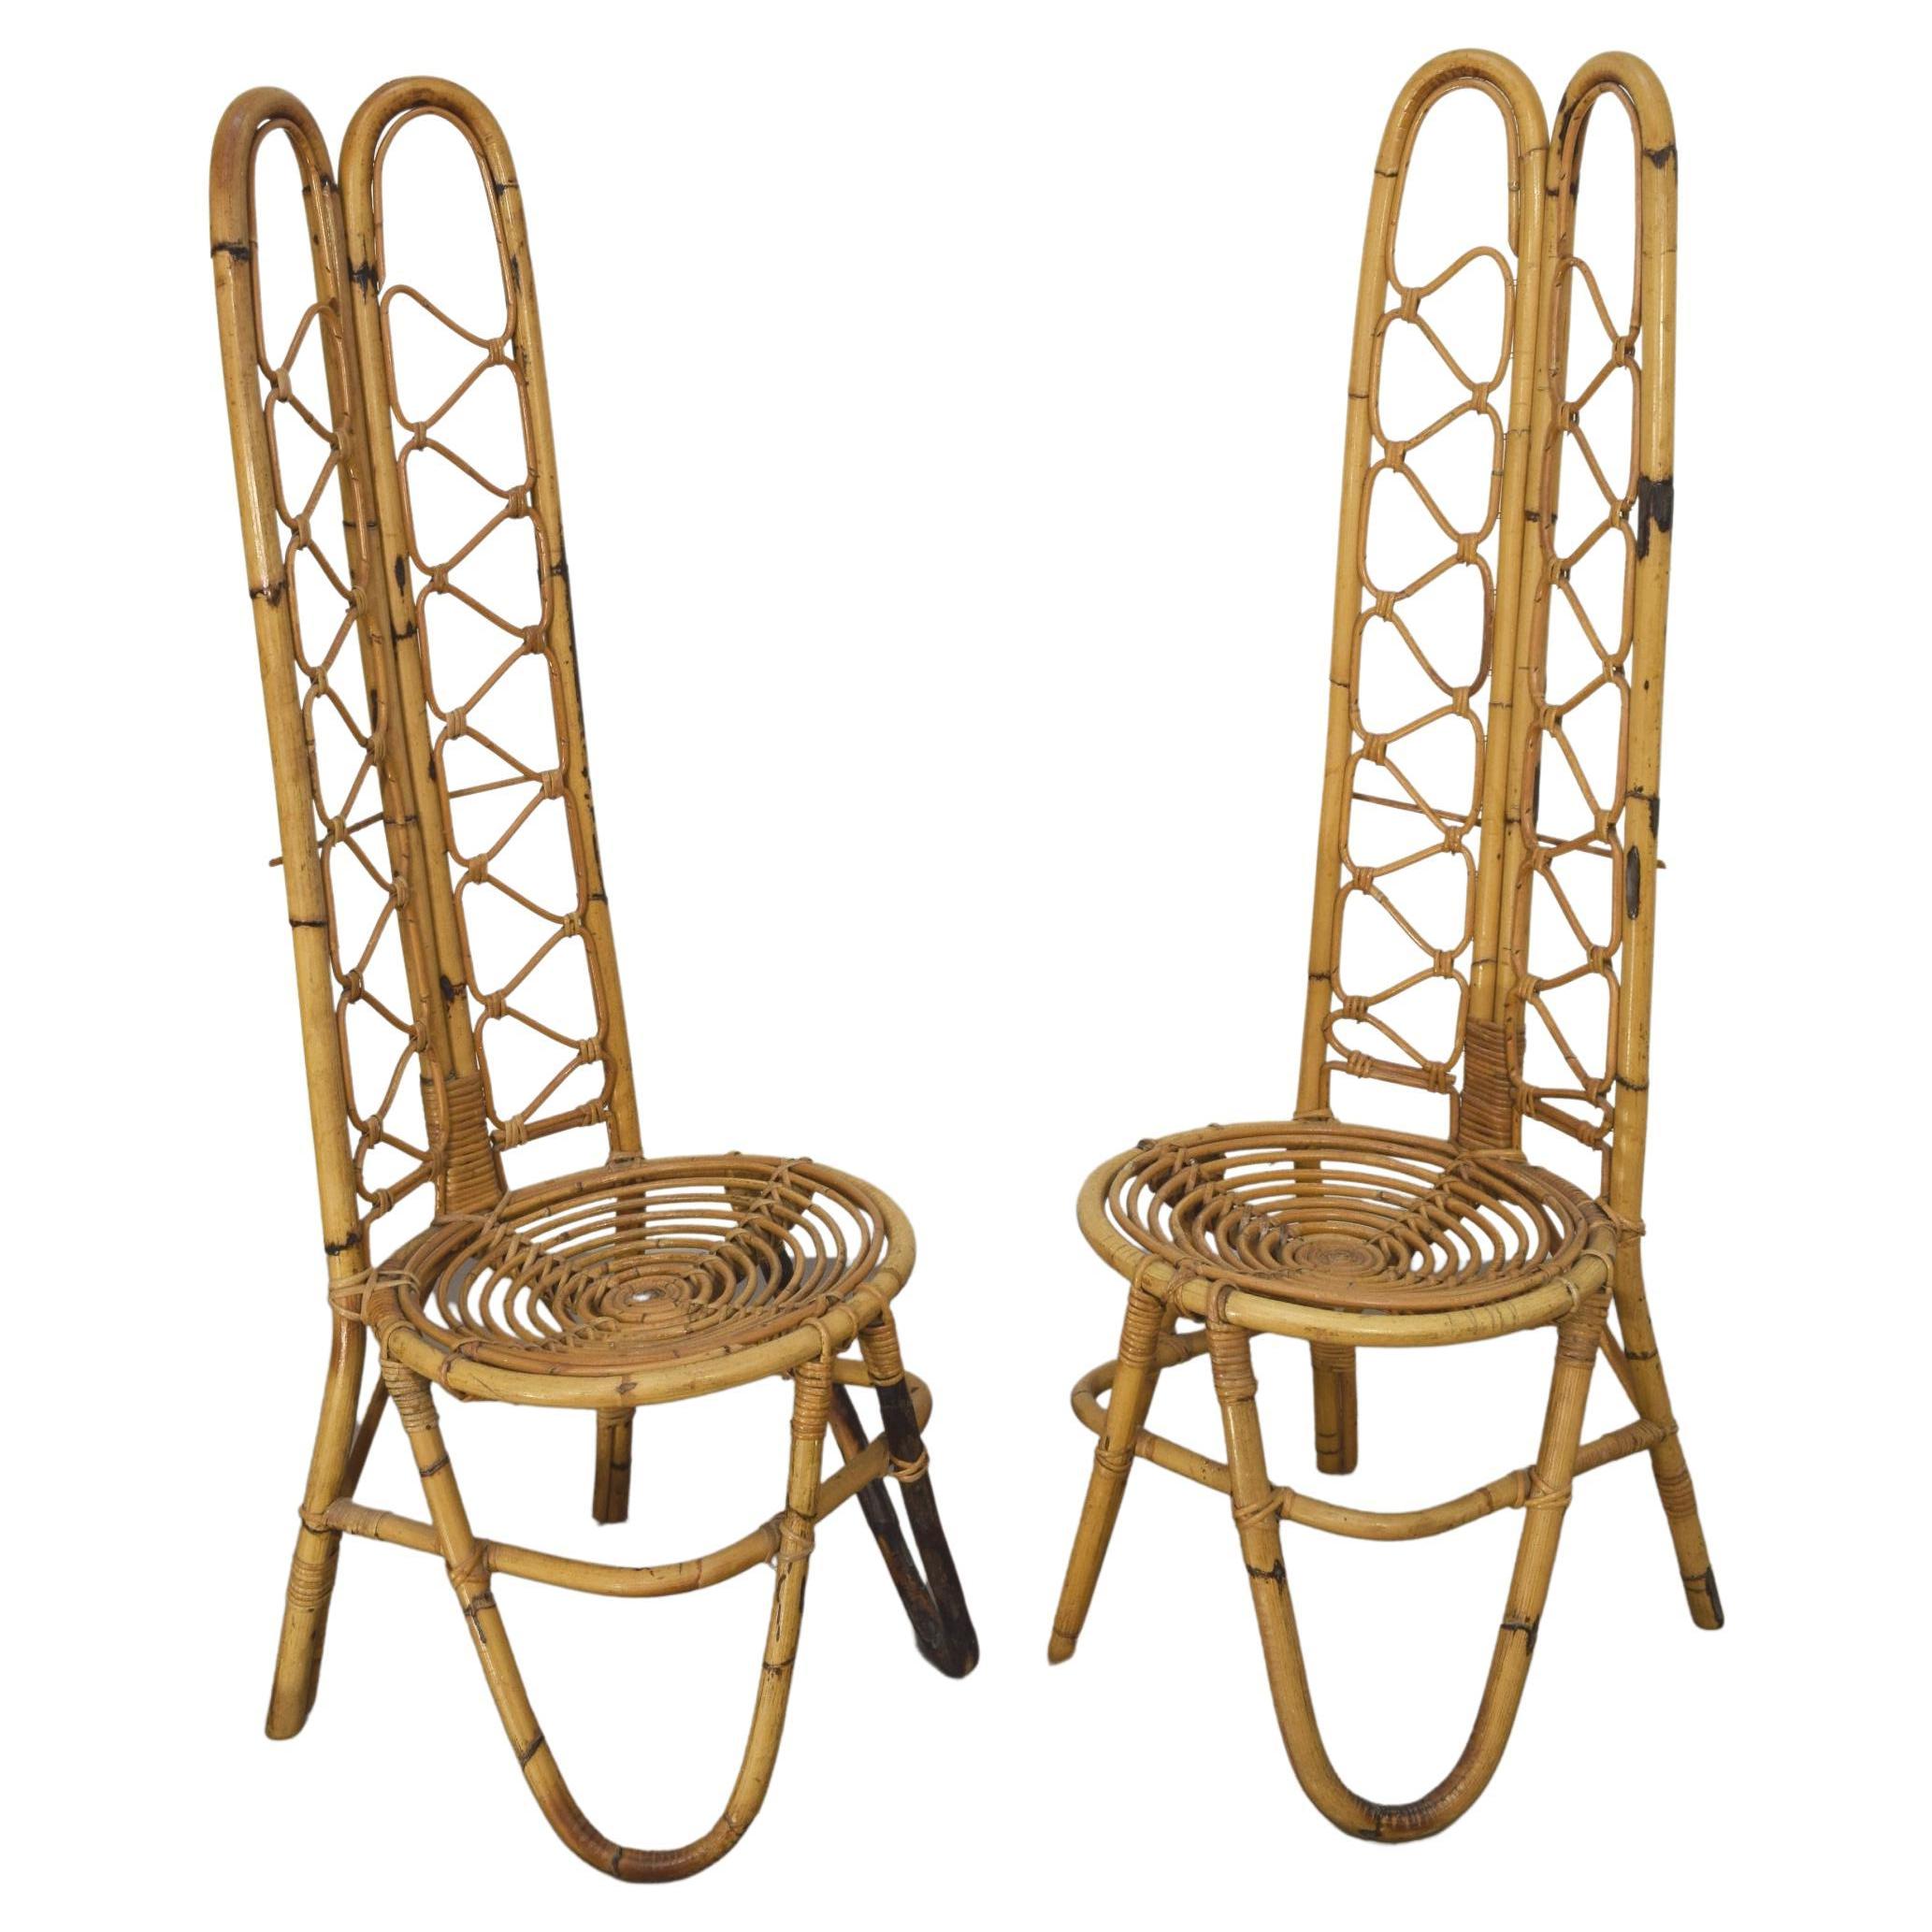 Pair of Italian Bamboo Chairs, 1960s